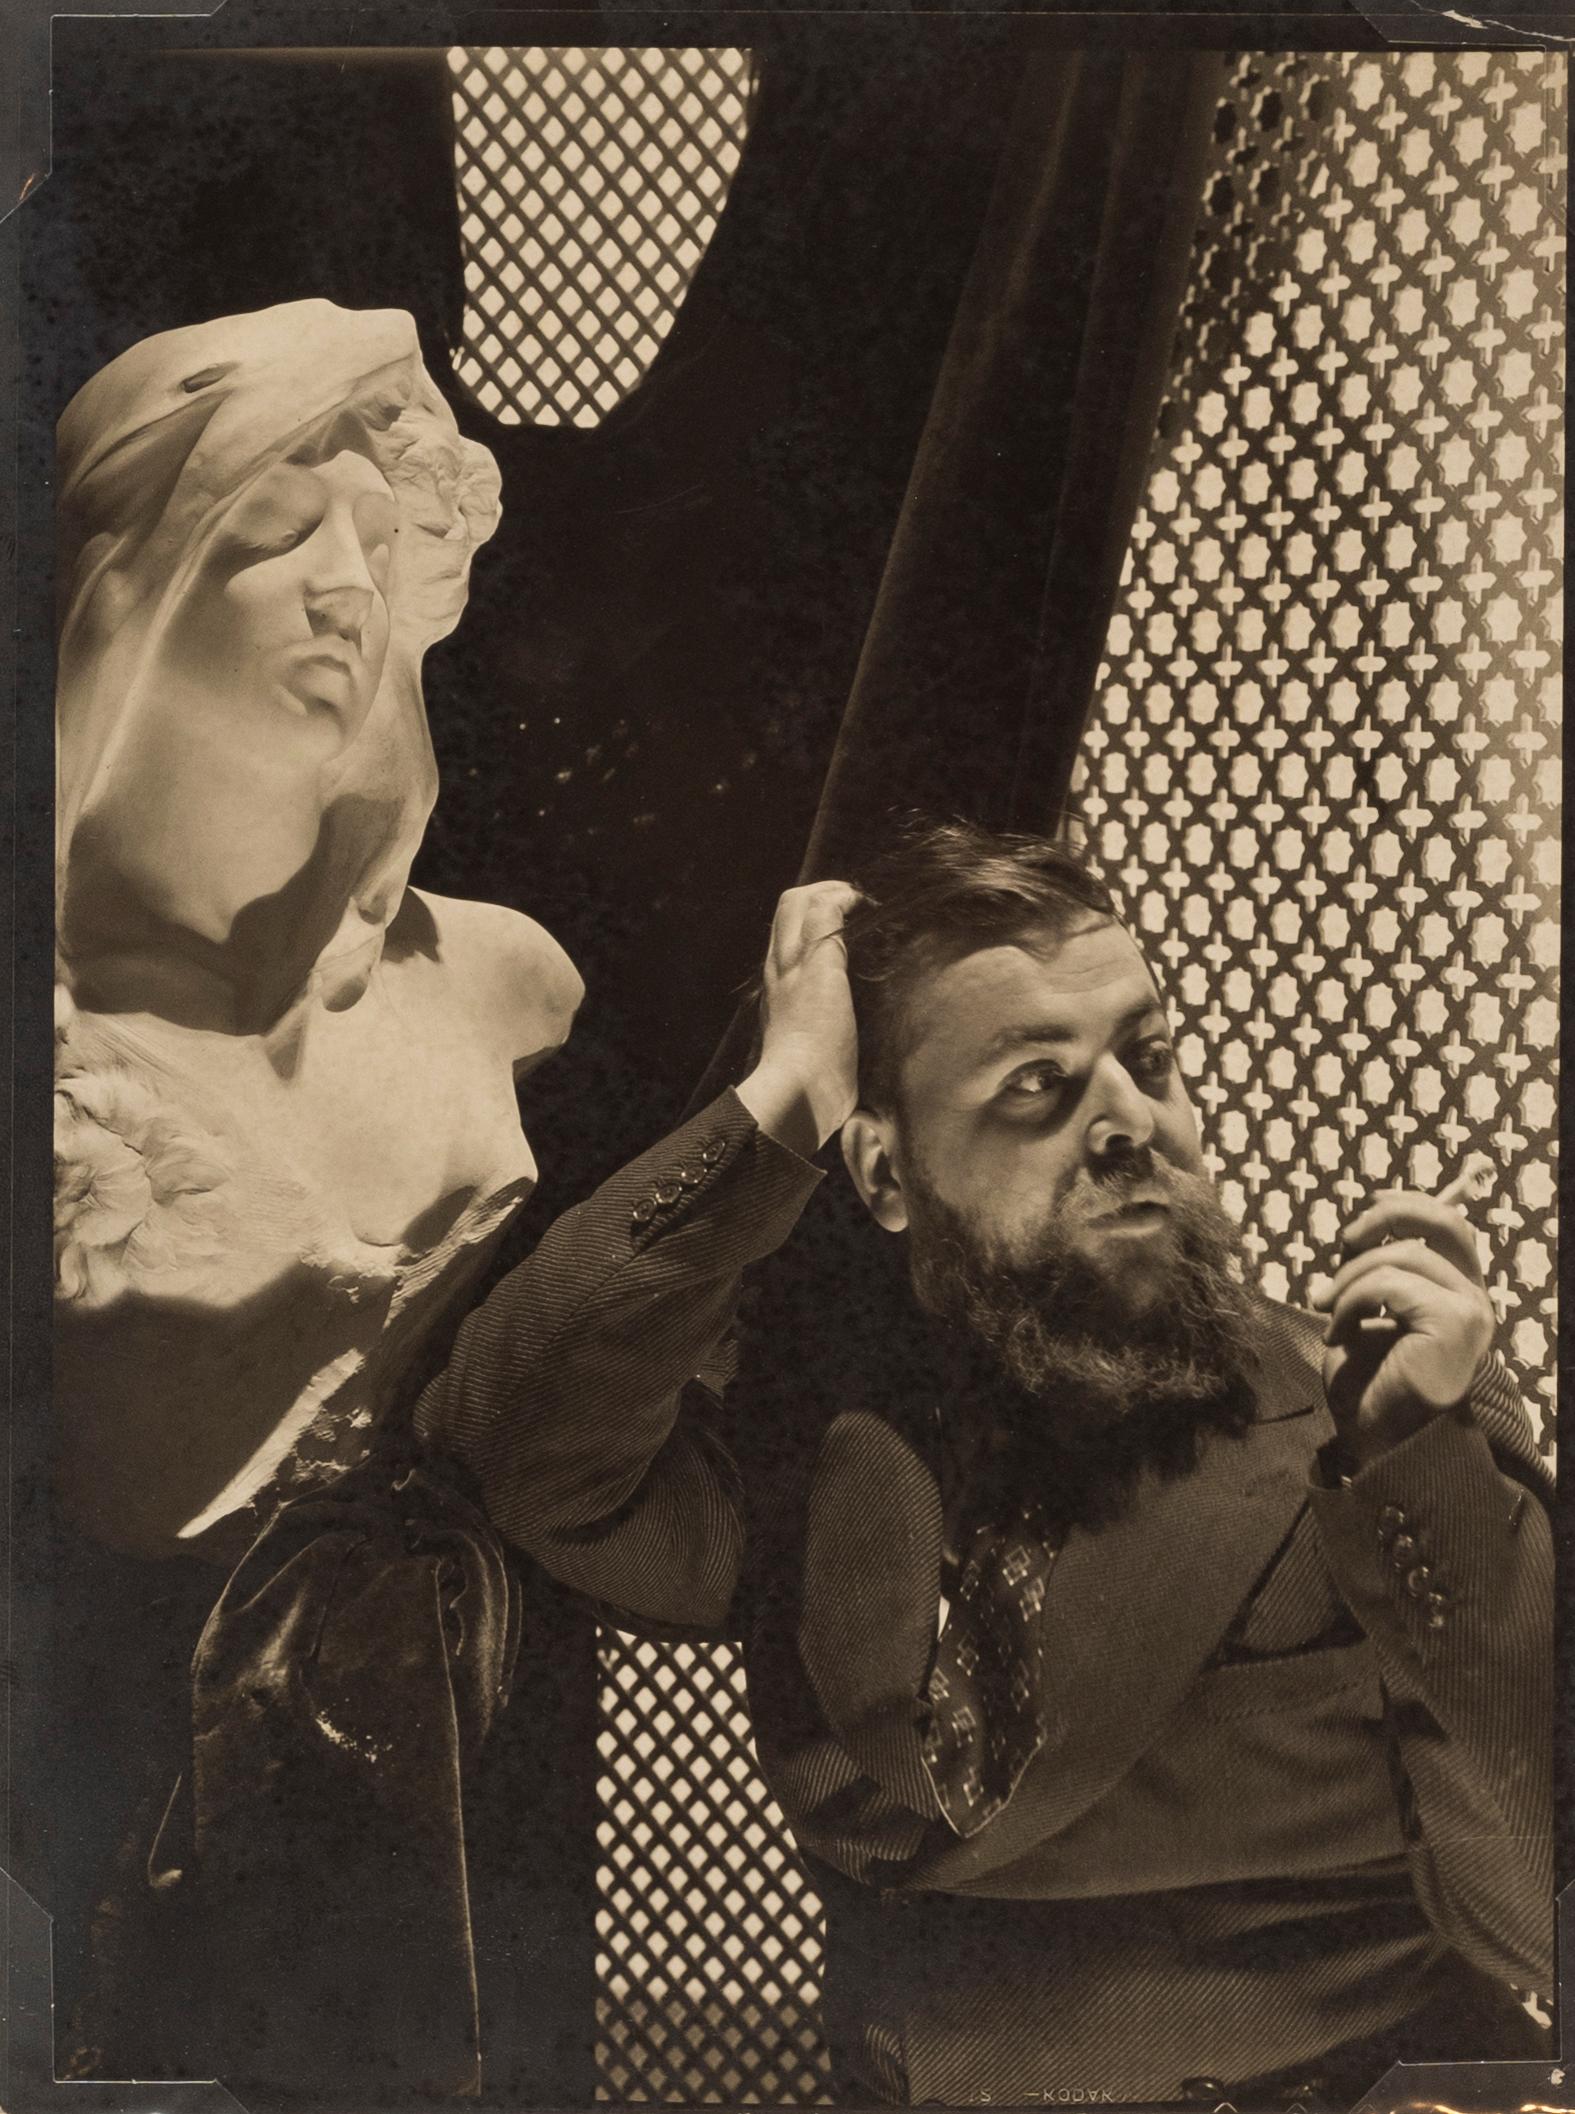 Porträt von Christian Bérard, 1930er Jahre - Cecil Beaton (Porträtfotografie)
Unterzeichnet
Silbergelatineabzug, gedruckt ca. 1970er Jahre
9 x 6 1/2 Zoll

Cecil Beaton (1904-1980) hatte ein brillantes ästhetisches Auge, das ihn in Verbindung mit